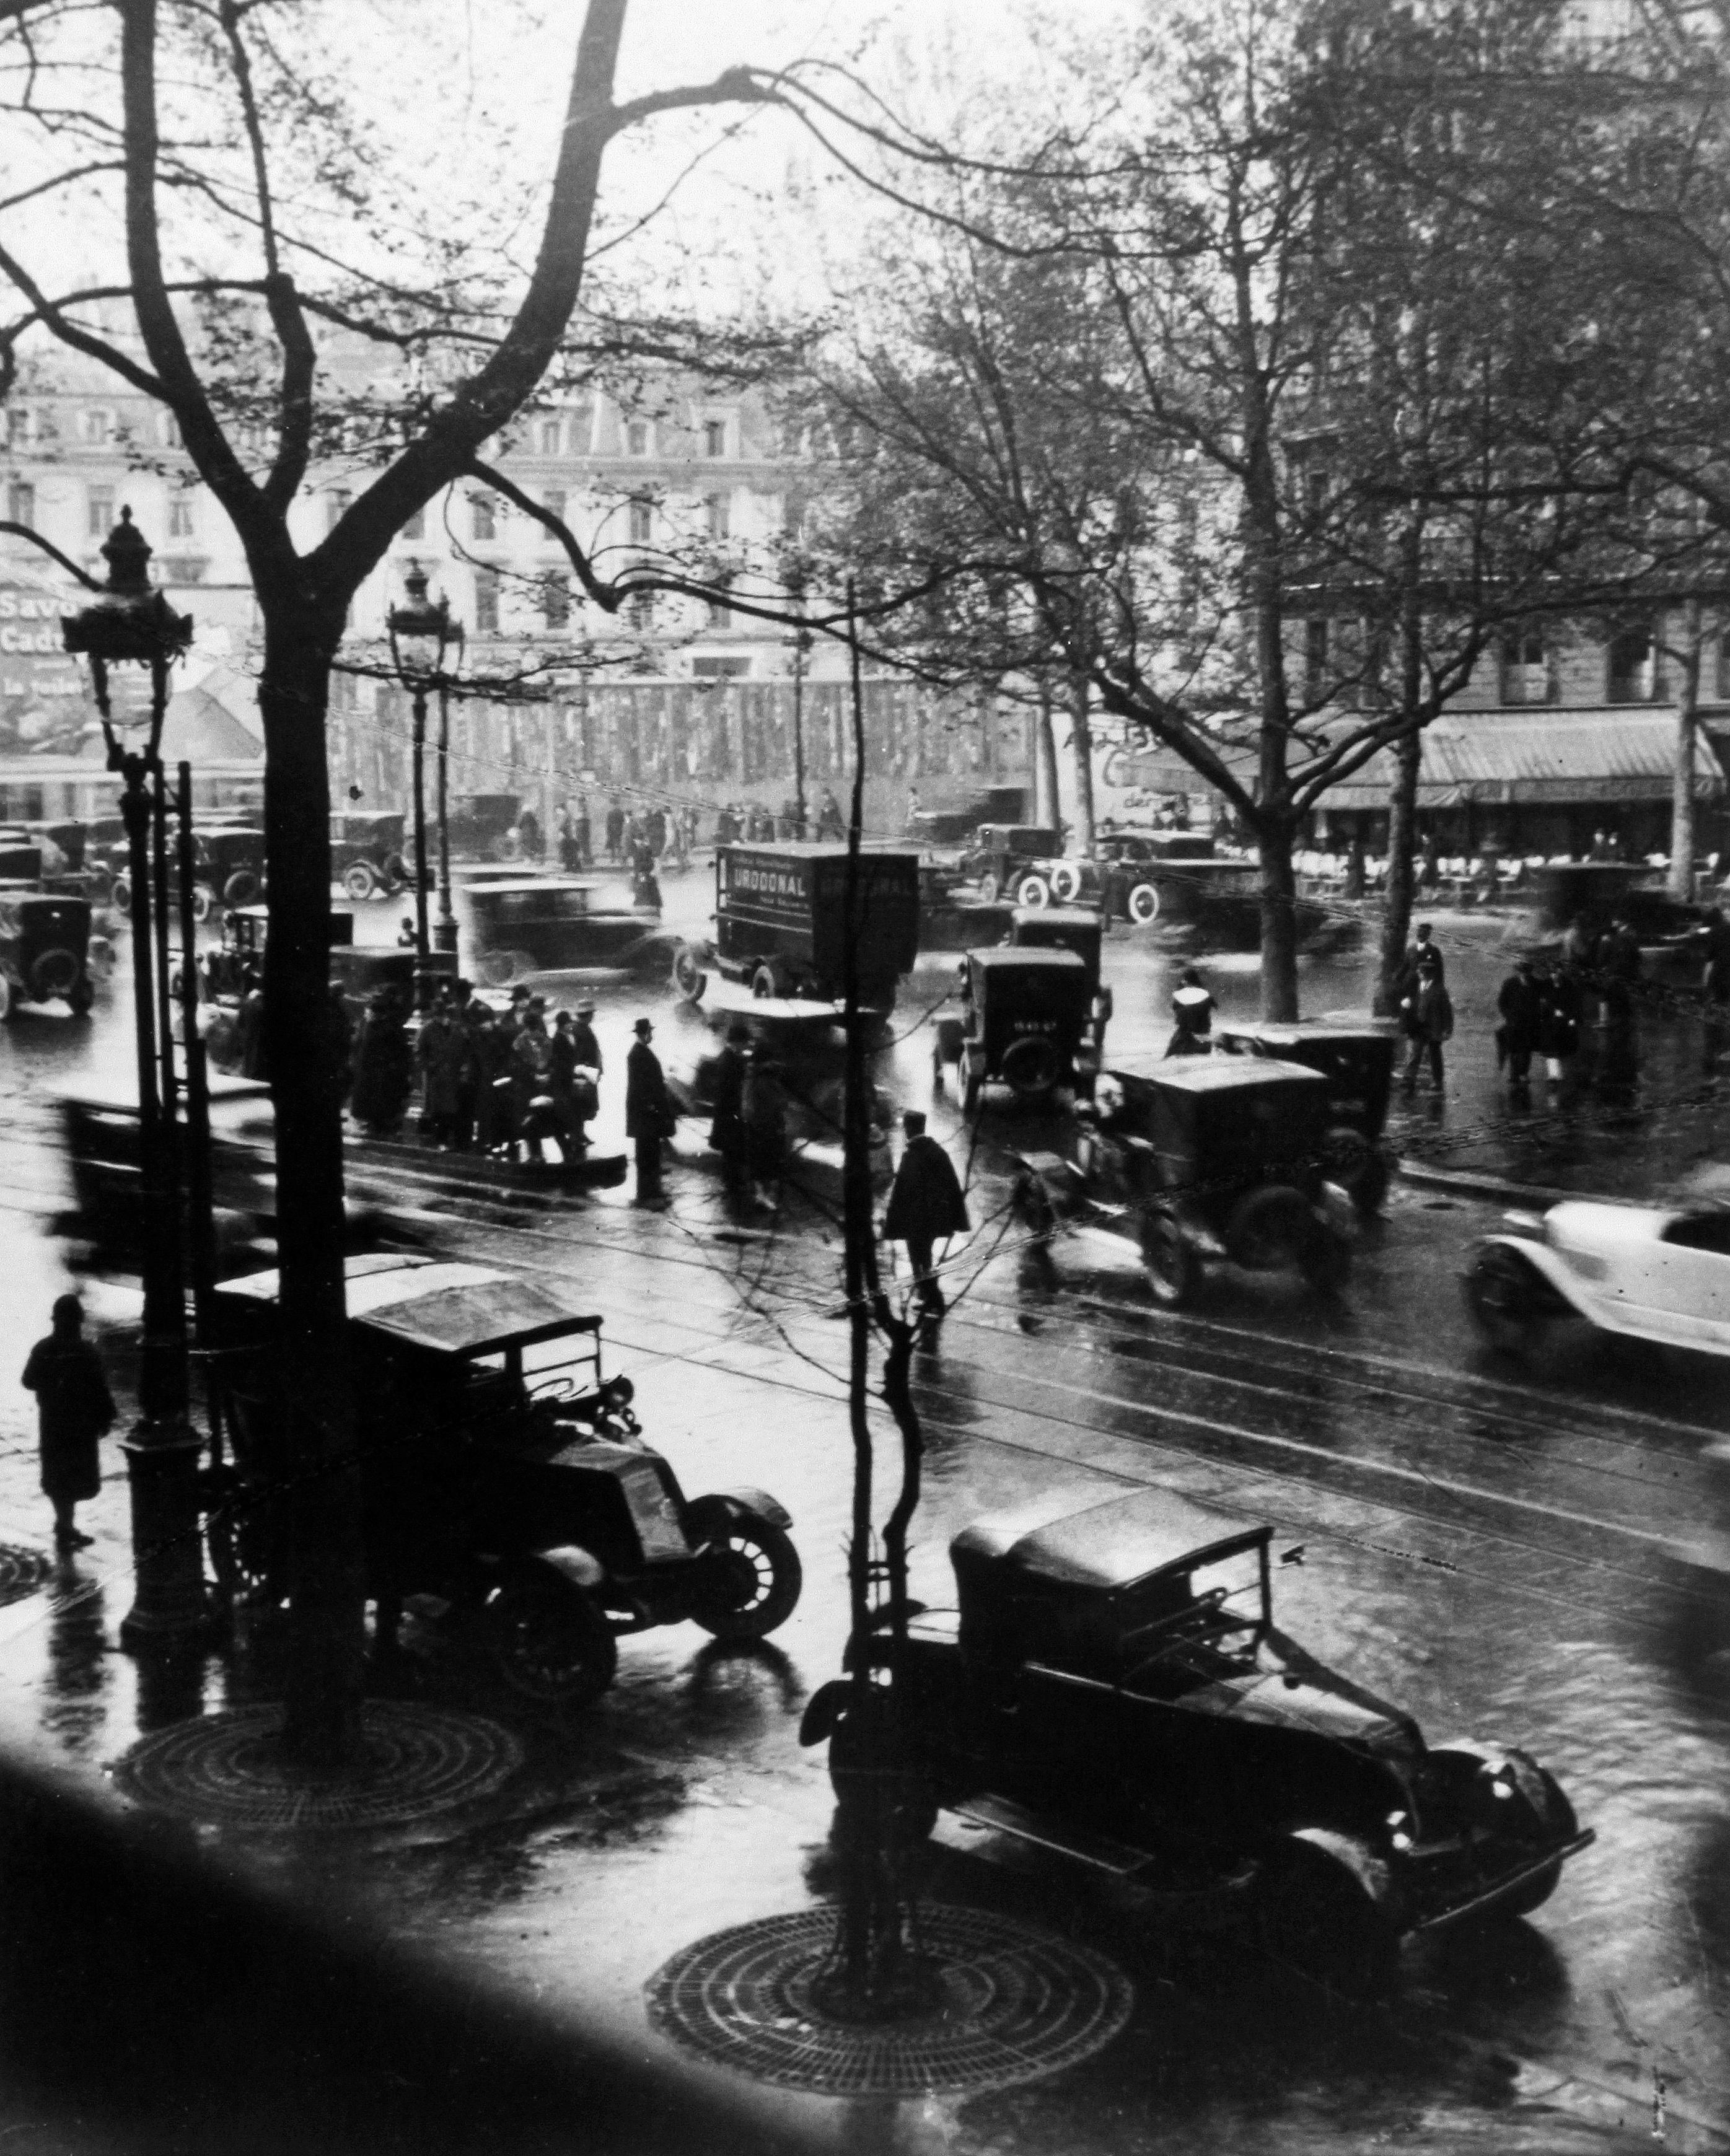 Boulevard Malesherbes à midi, Paris - Andre Kertesz (Noir et blanc)
Cachet à l'encre de la propriété du photographe sur le revers
Tirage à la gélatine argentique, imprimé vers 1980
9 1/2 x 8 pouces

André Kertész (1894-1985) est largement considéré